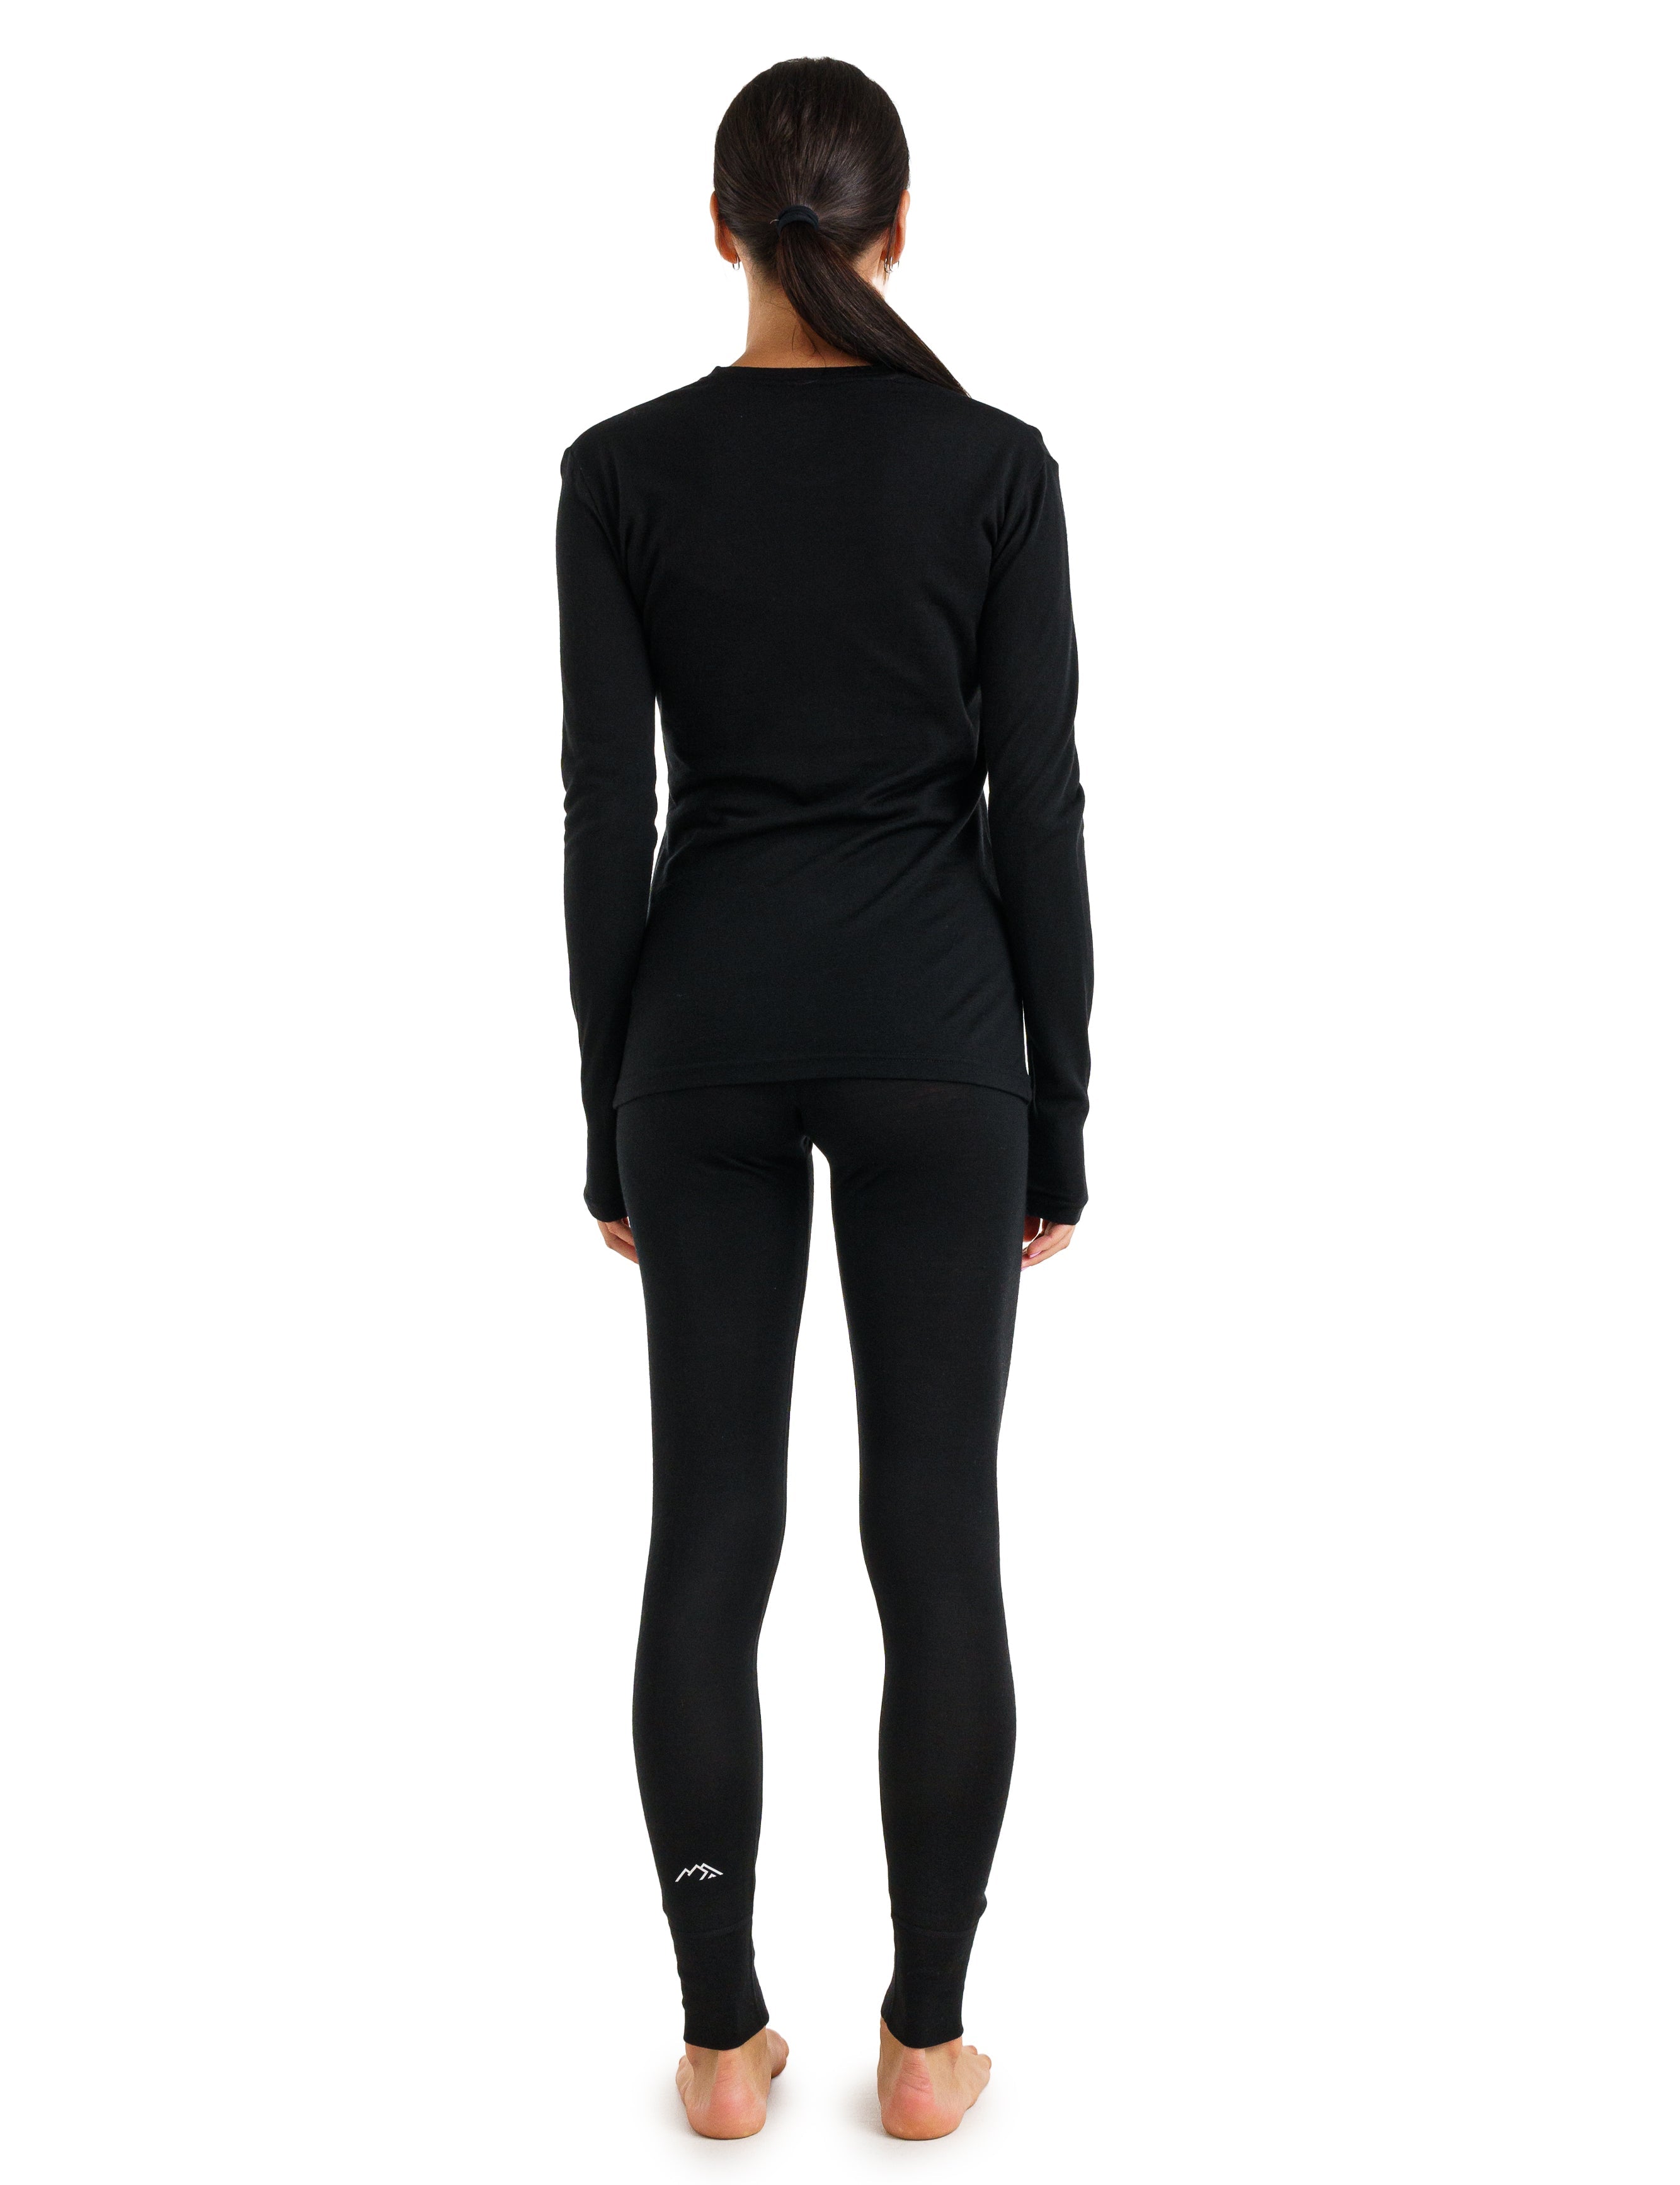 Women's Merino Wool Base Layer Set | Thermal Set | Black